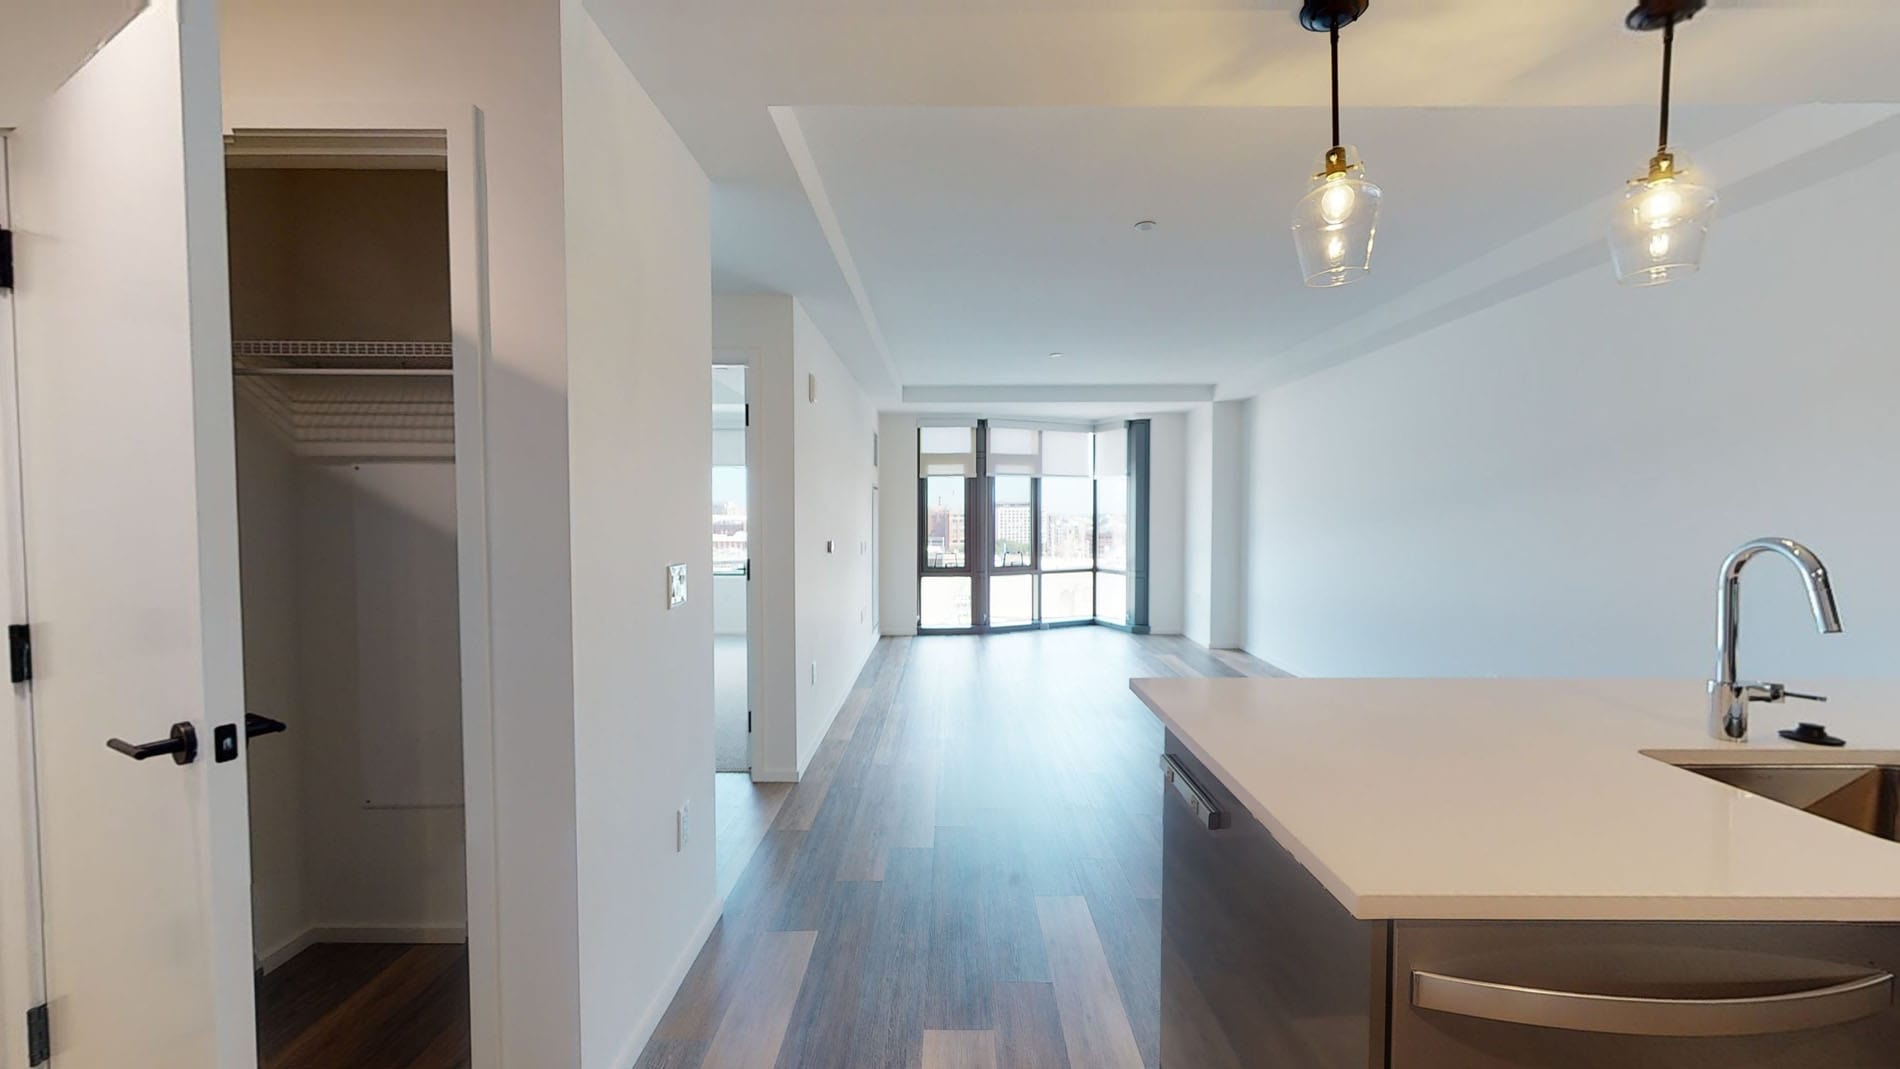 Photos of apartment on Malden St.,Boston MA 02118